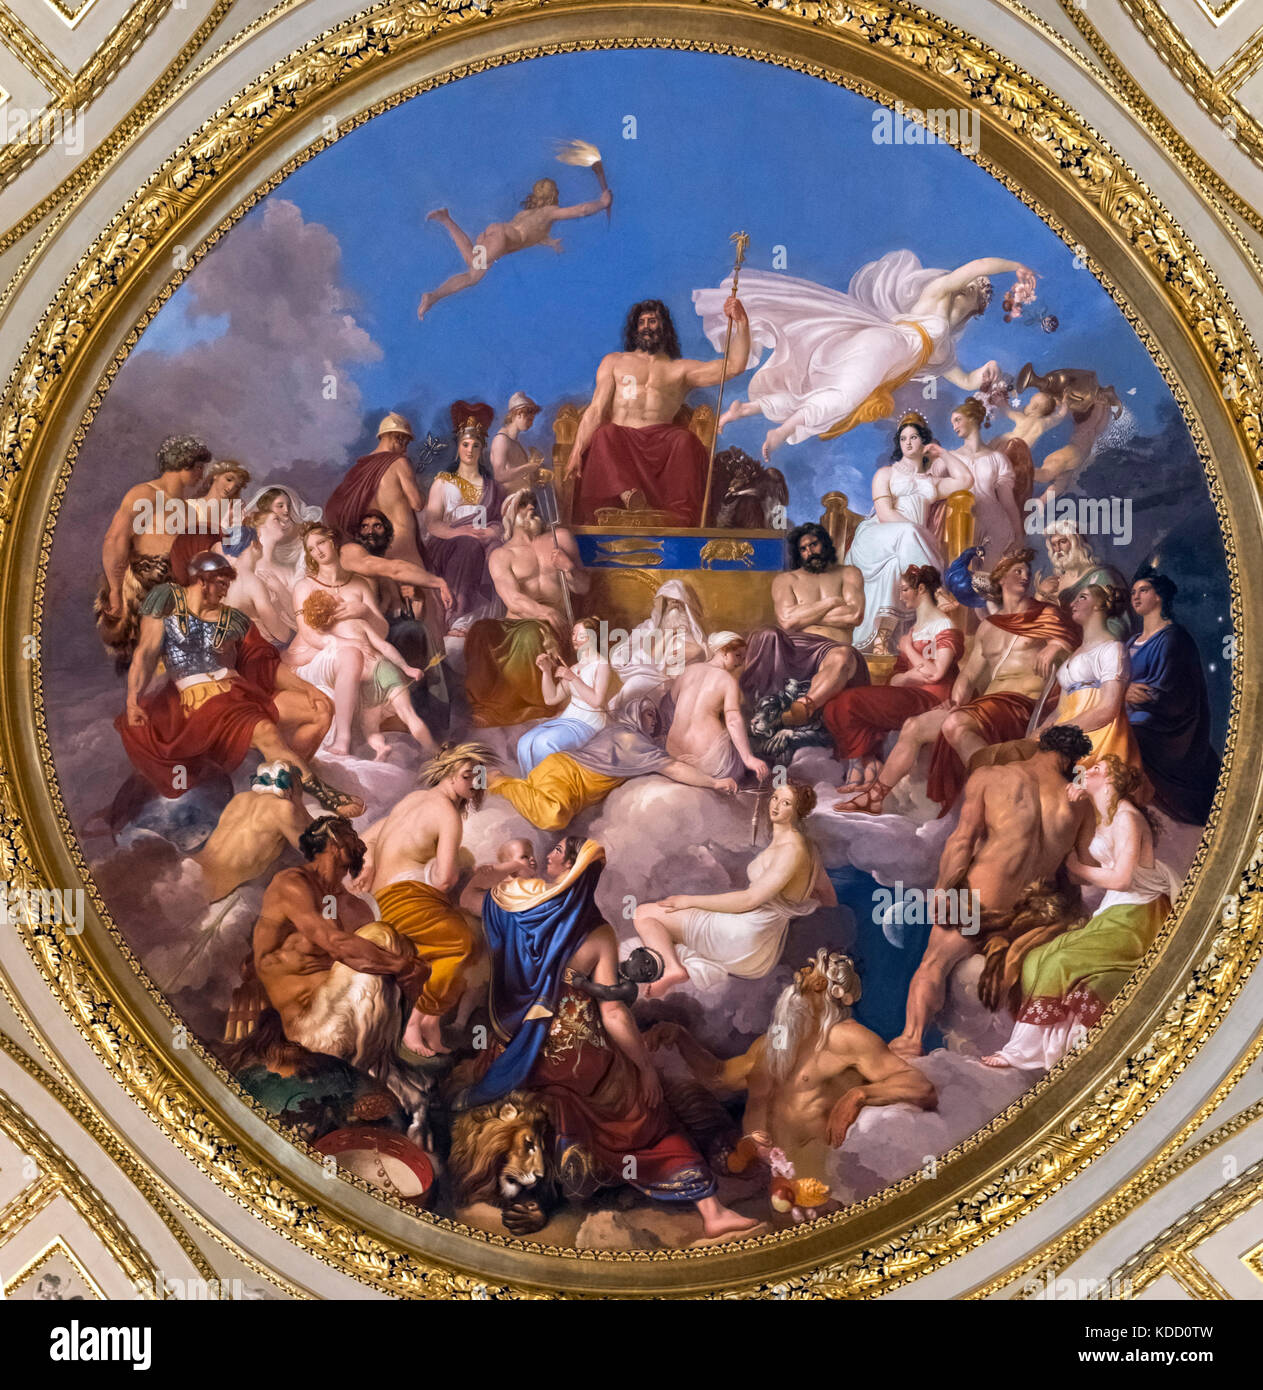 Assemblée des Dieux présidé par Jupiter, la peinture sur le plafond de l'Iliade Prix, Galerie Palatine, Palazzo Pitti (Palais Pitti), Florence, Italie. Banque D'Images